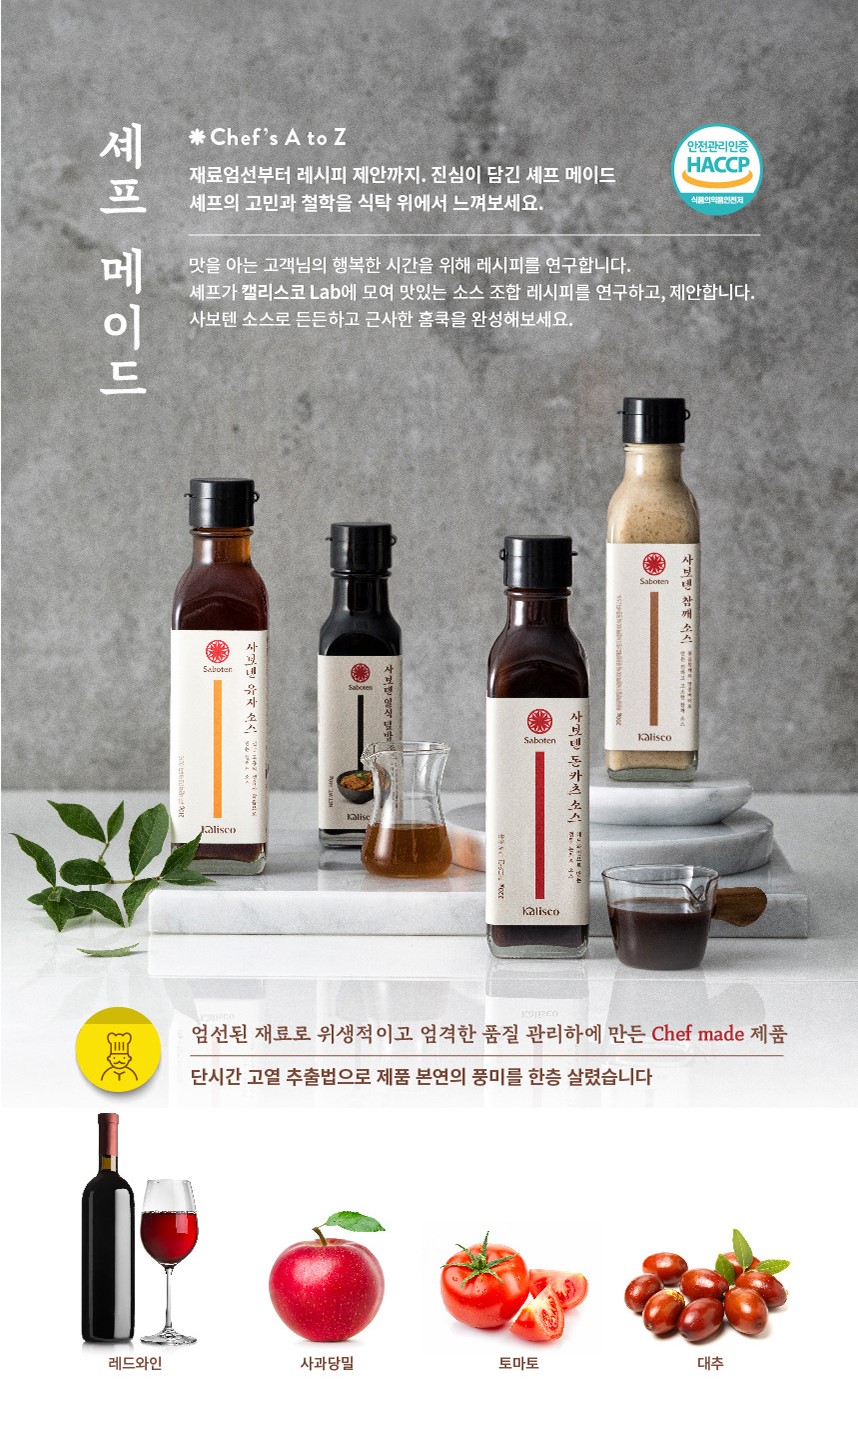 韓國食品-[사보텐] 돈카츠 소스 220g